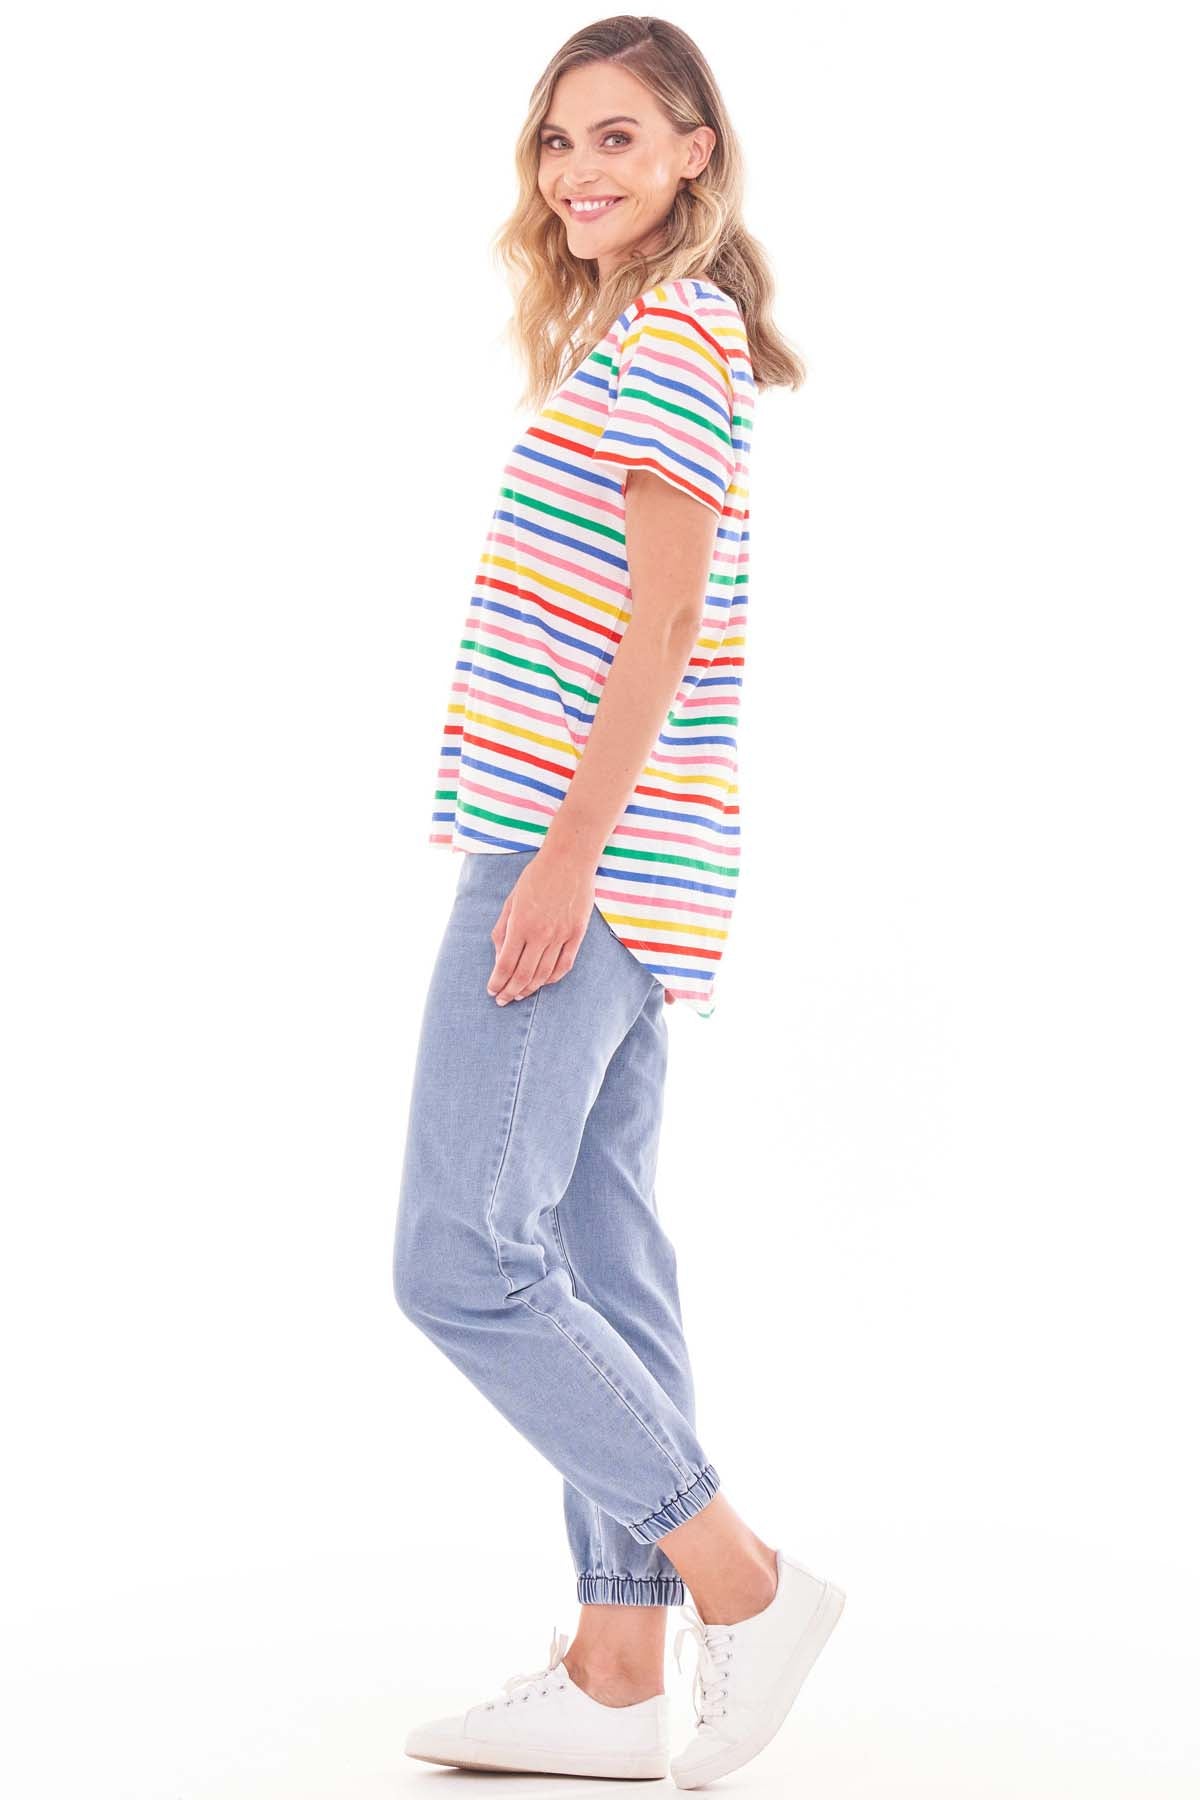 Betty Basics Ava Tee in Rainbow Stripe - Hey Sara